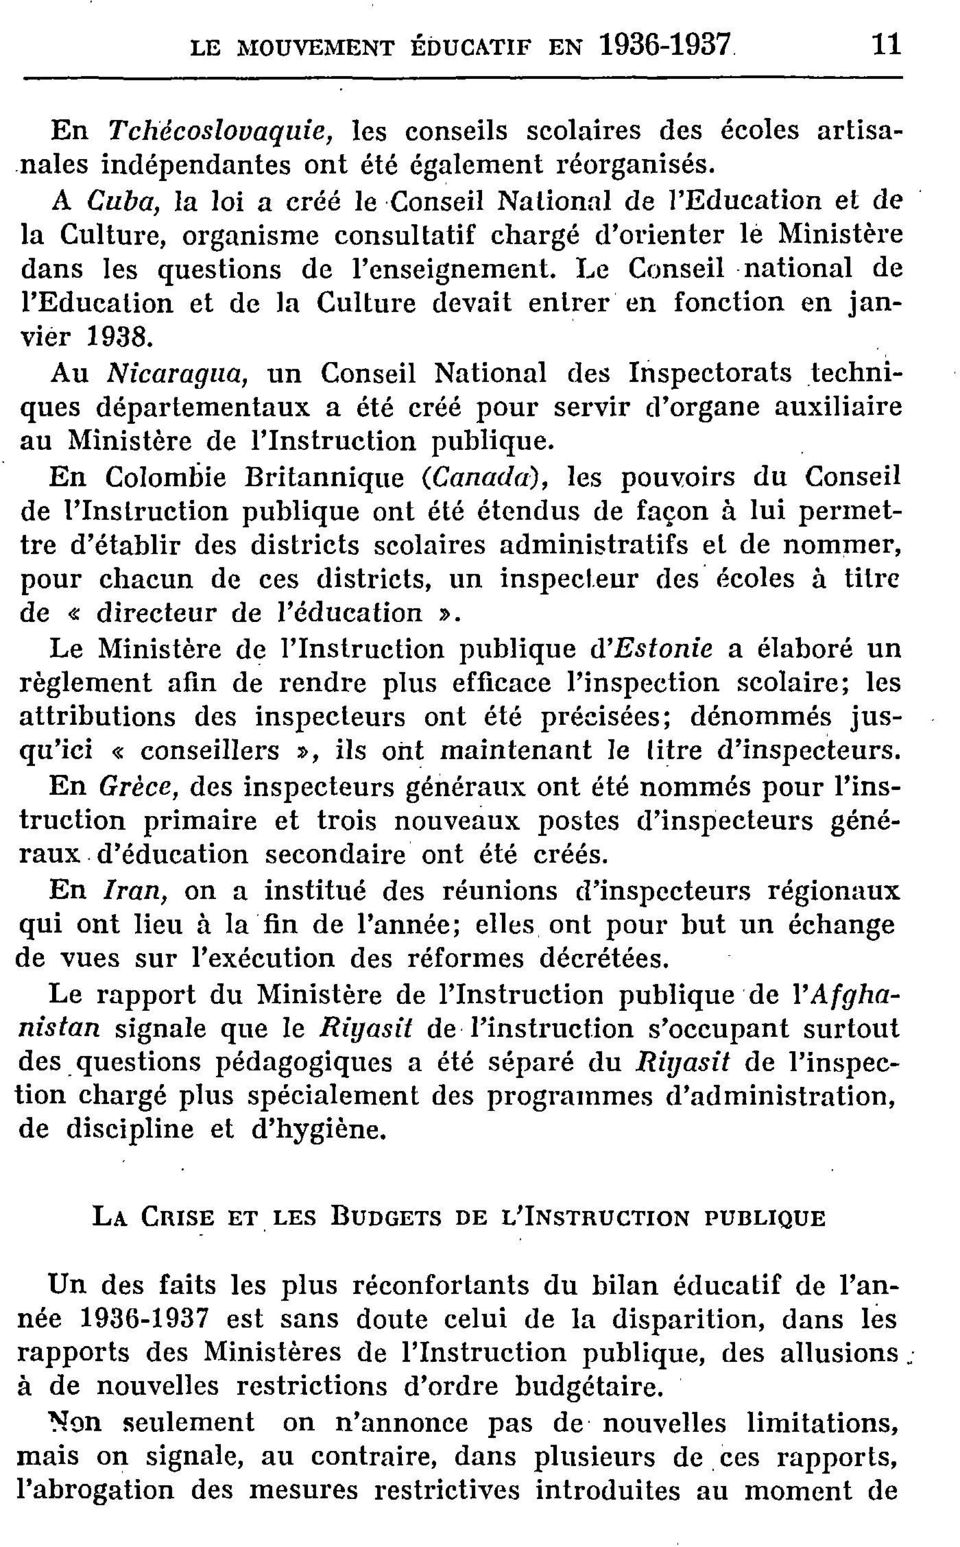 Le Cnseil natinal de l'educatin et de la Culture devait entrer en fnctin en janvier 1938.